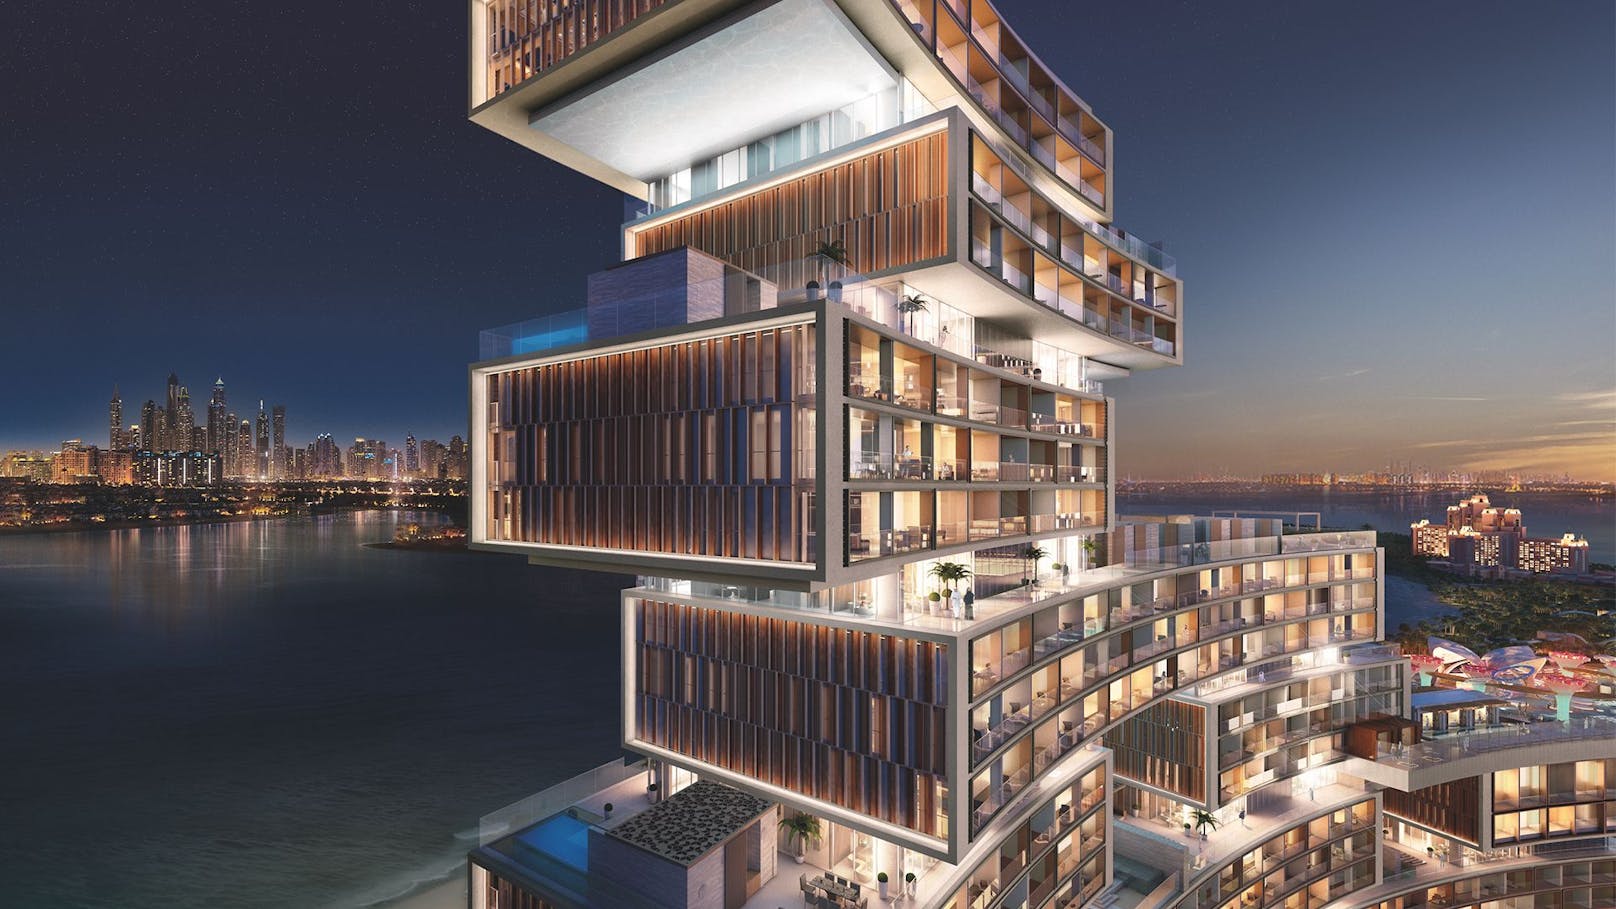 Jetzt fehlt nur noch ein Eigentümer: "Die Käufer, insbesondere vermögende Einzelpersonen, entscheiden sich aufgrund der hohen Sicherheit, die das Land bietet, für Dubai", erklärt Nikita Kuznetsov, Partner der Metropolitan Group und CEO von Metropolitan Premium Properties.